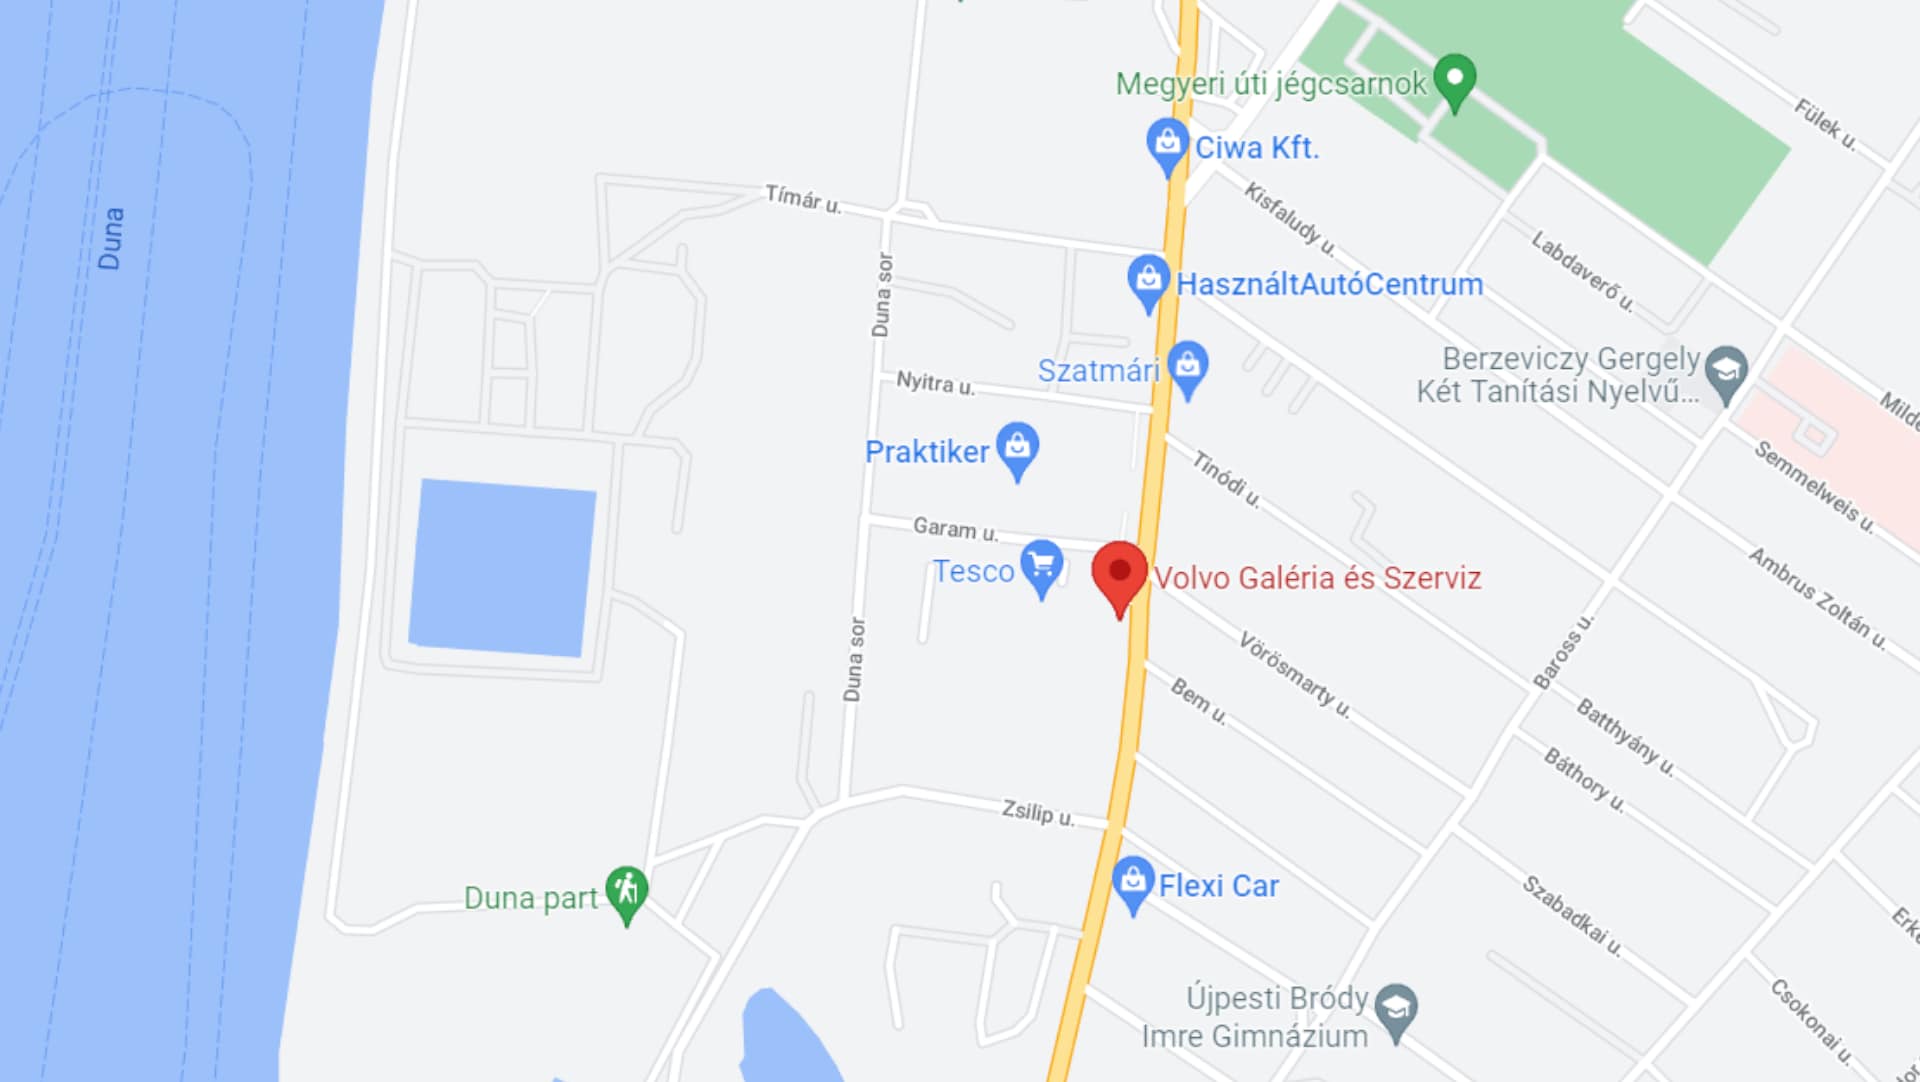 Volvo Galéria és Szerviz lokációja a Google Maps-en